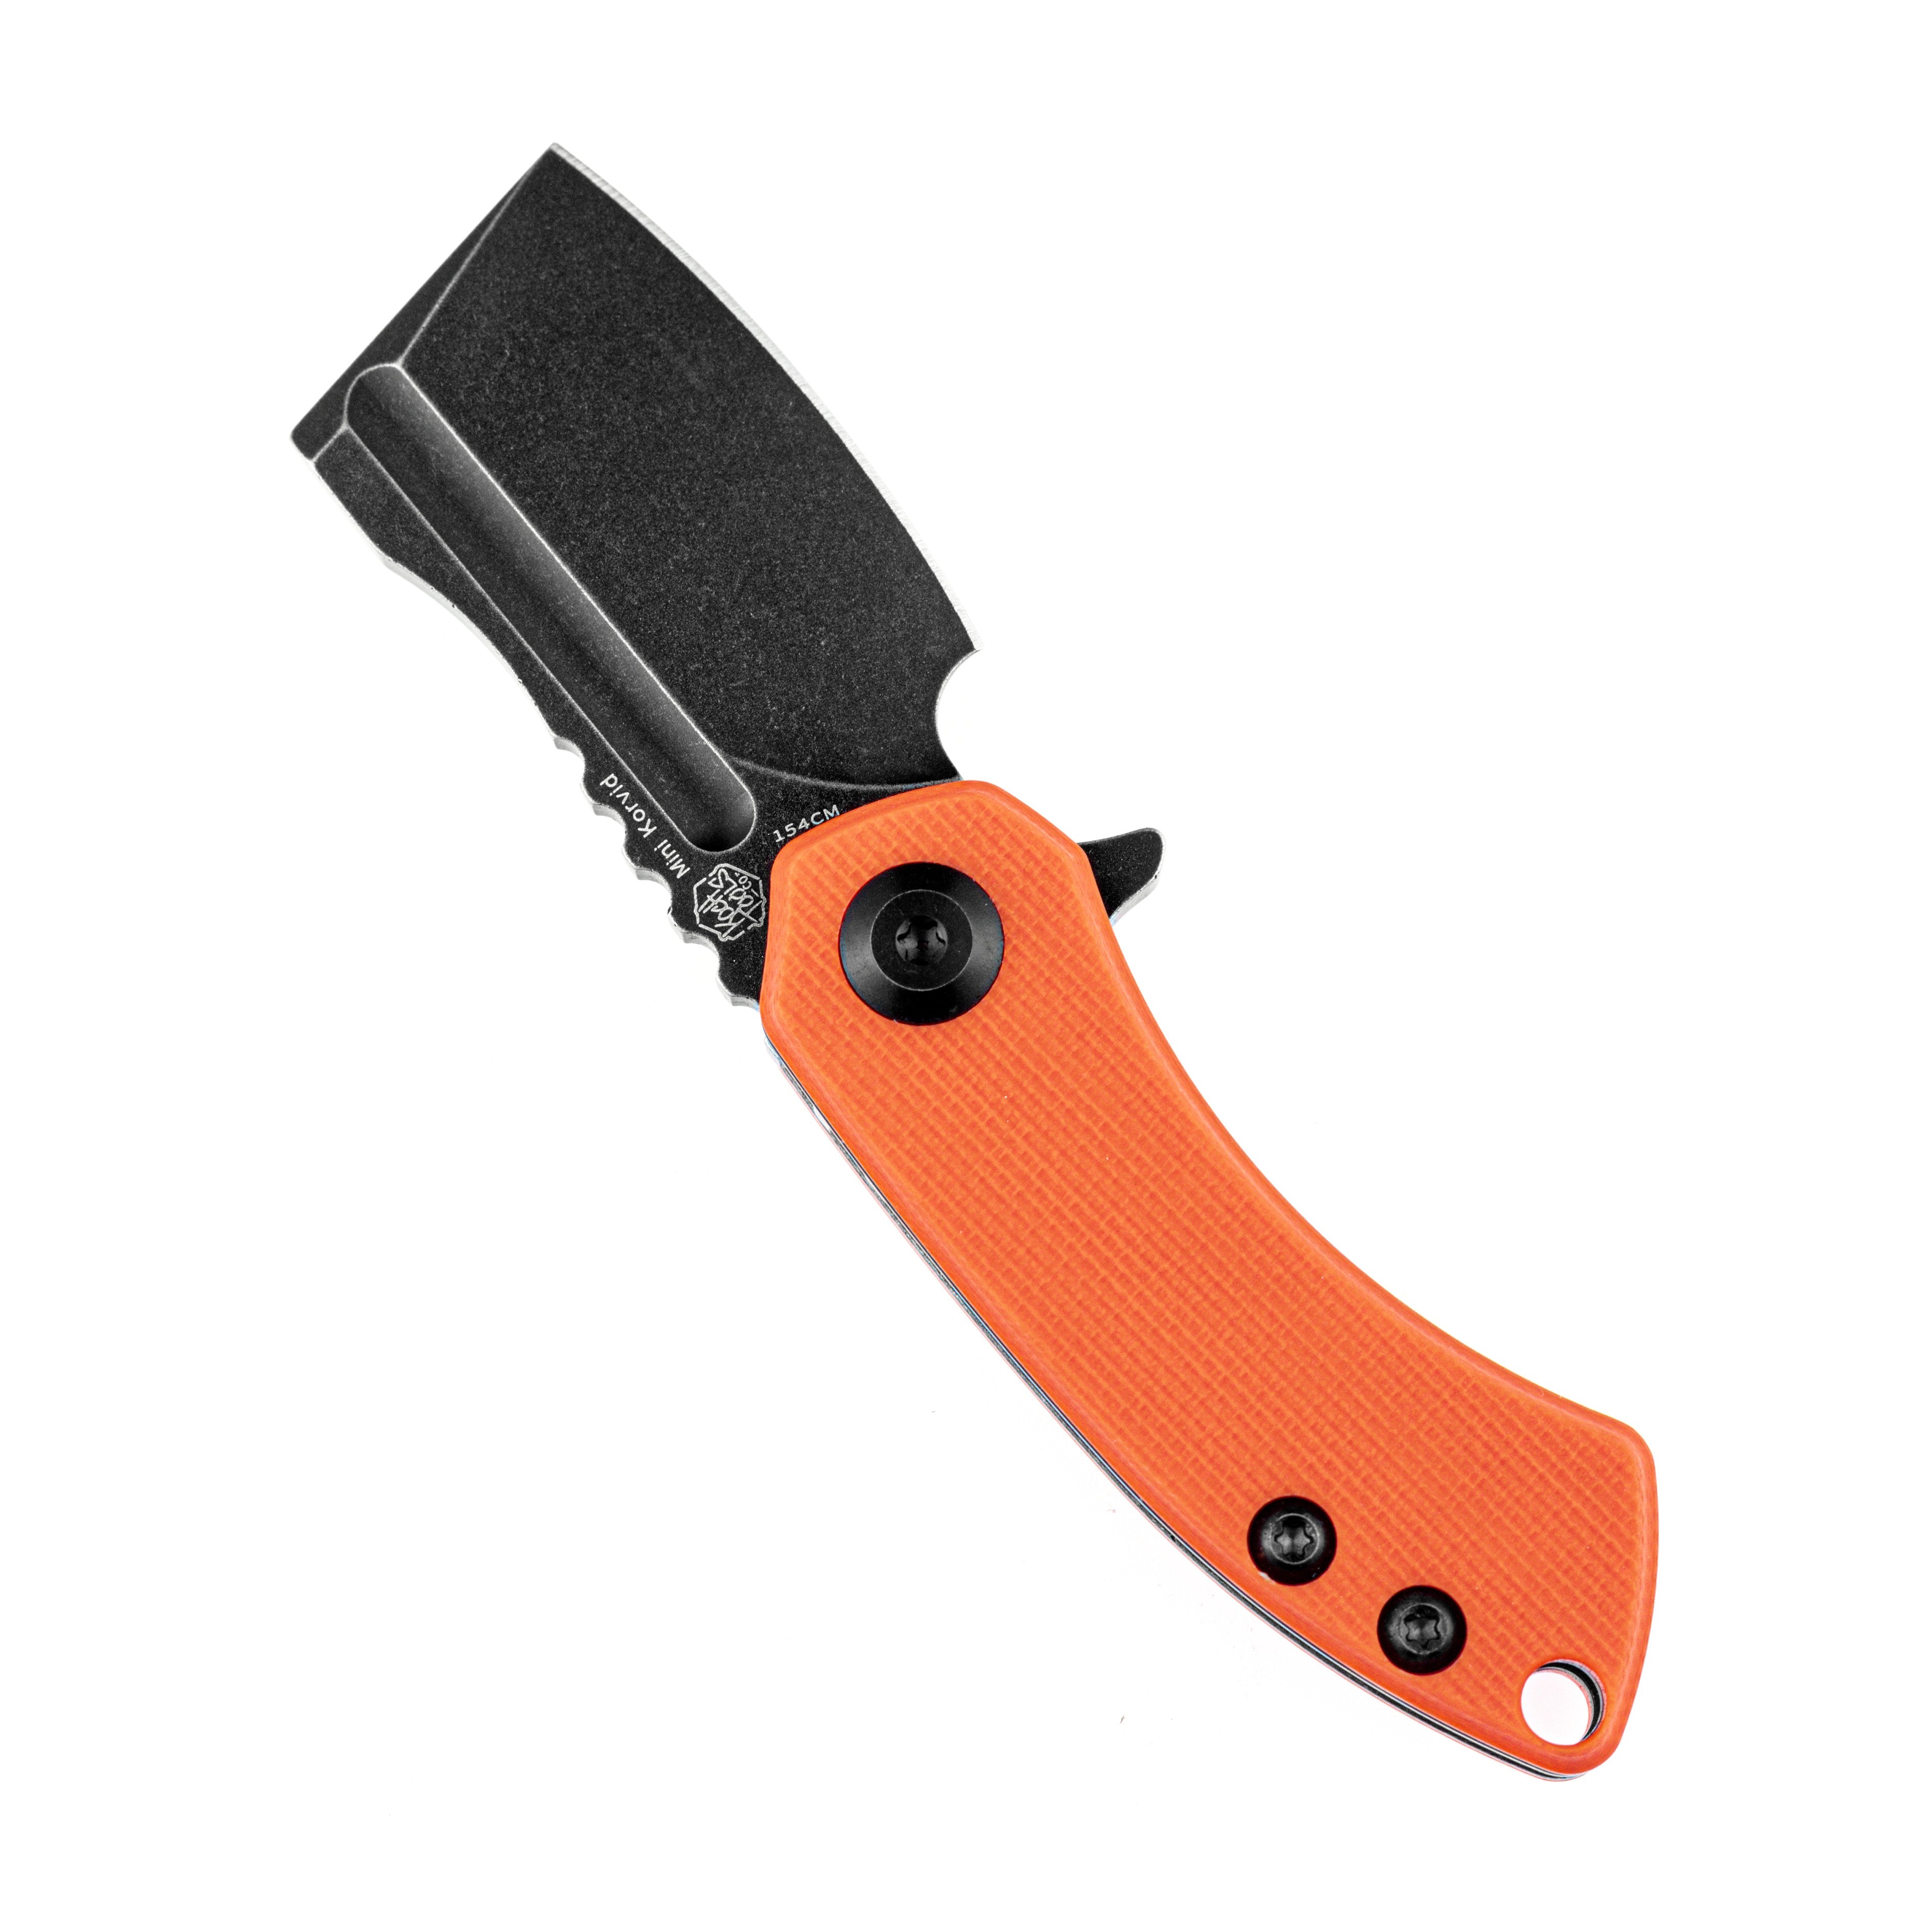 Kansept 刀具 T3030A7 迷你 Korvid 154 厘米刀片橙色 G10 手柄内衬锁 Edc 刀具